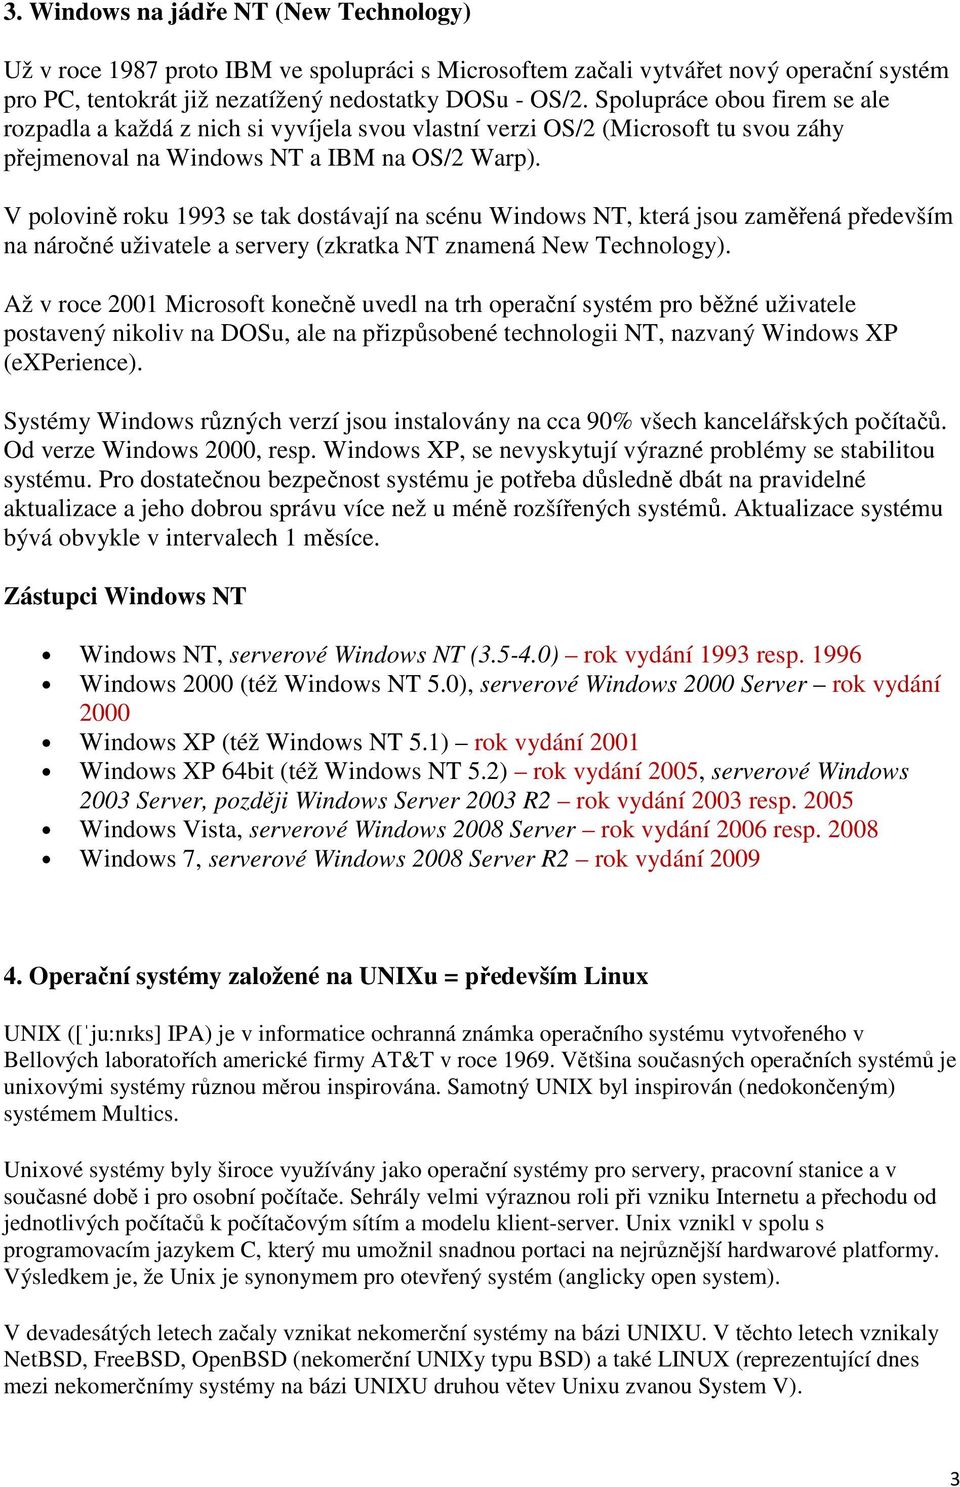 V polovině roku 1993 se tak dostávají na scénu Windows NT, která jsou zaměřená především na náročné uživatele a servery (zkratka NT znamená New Technology).